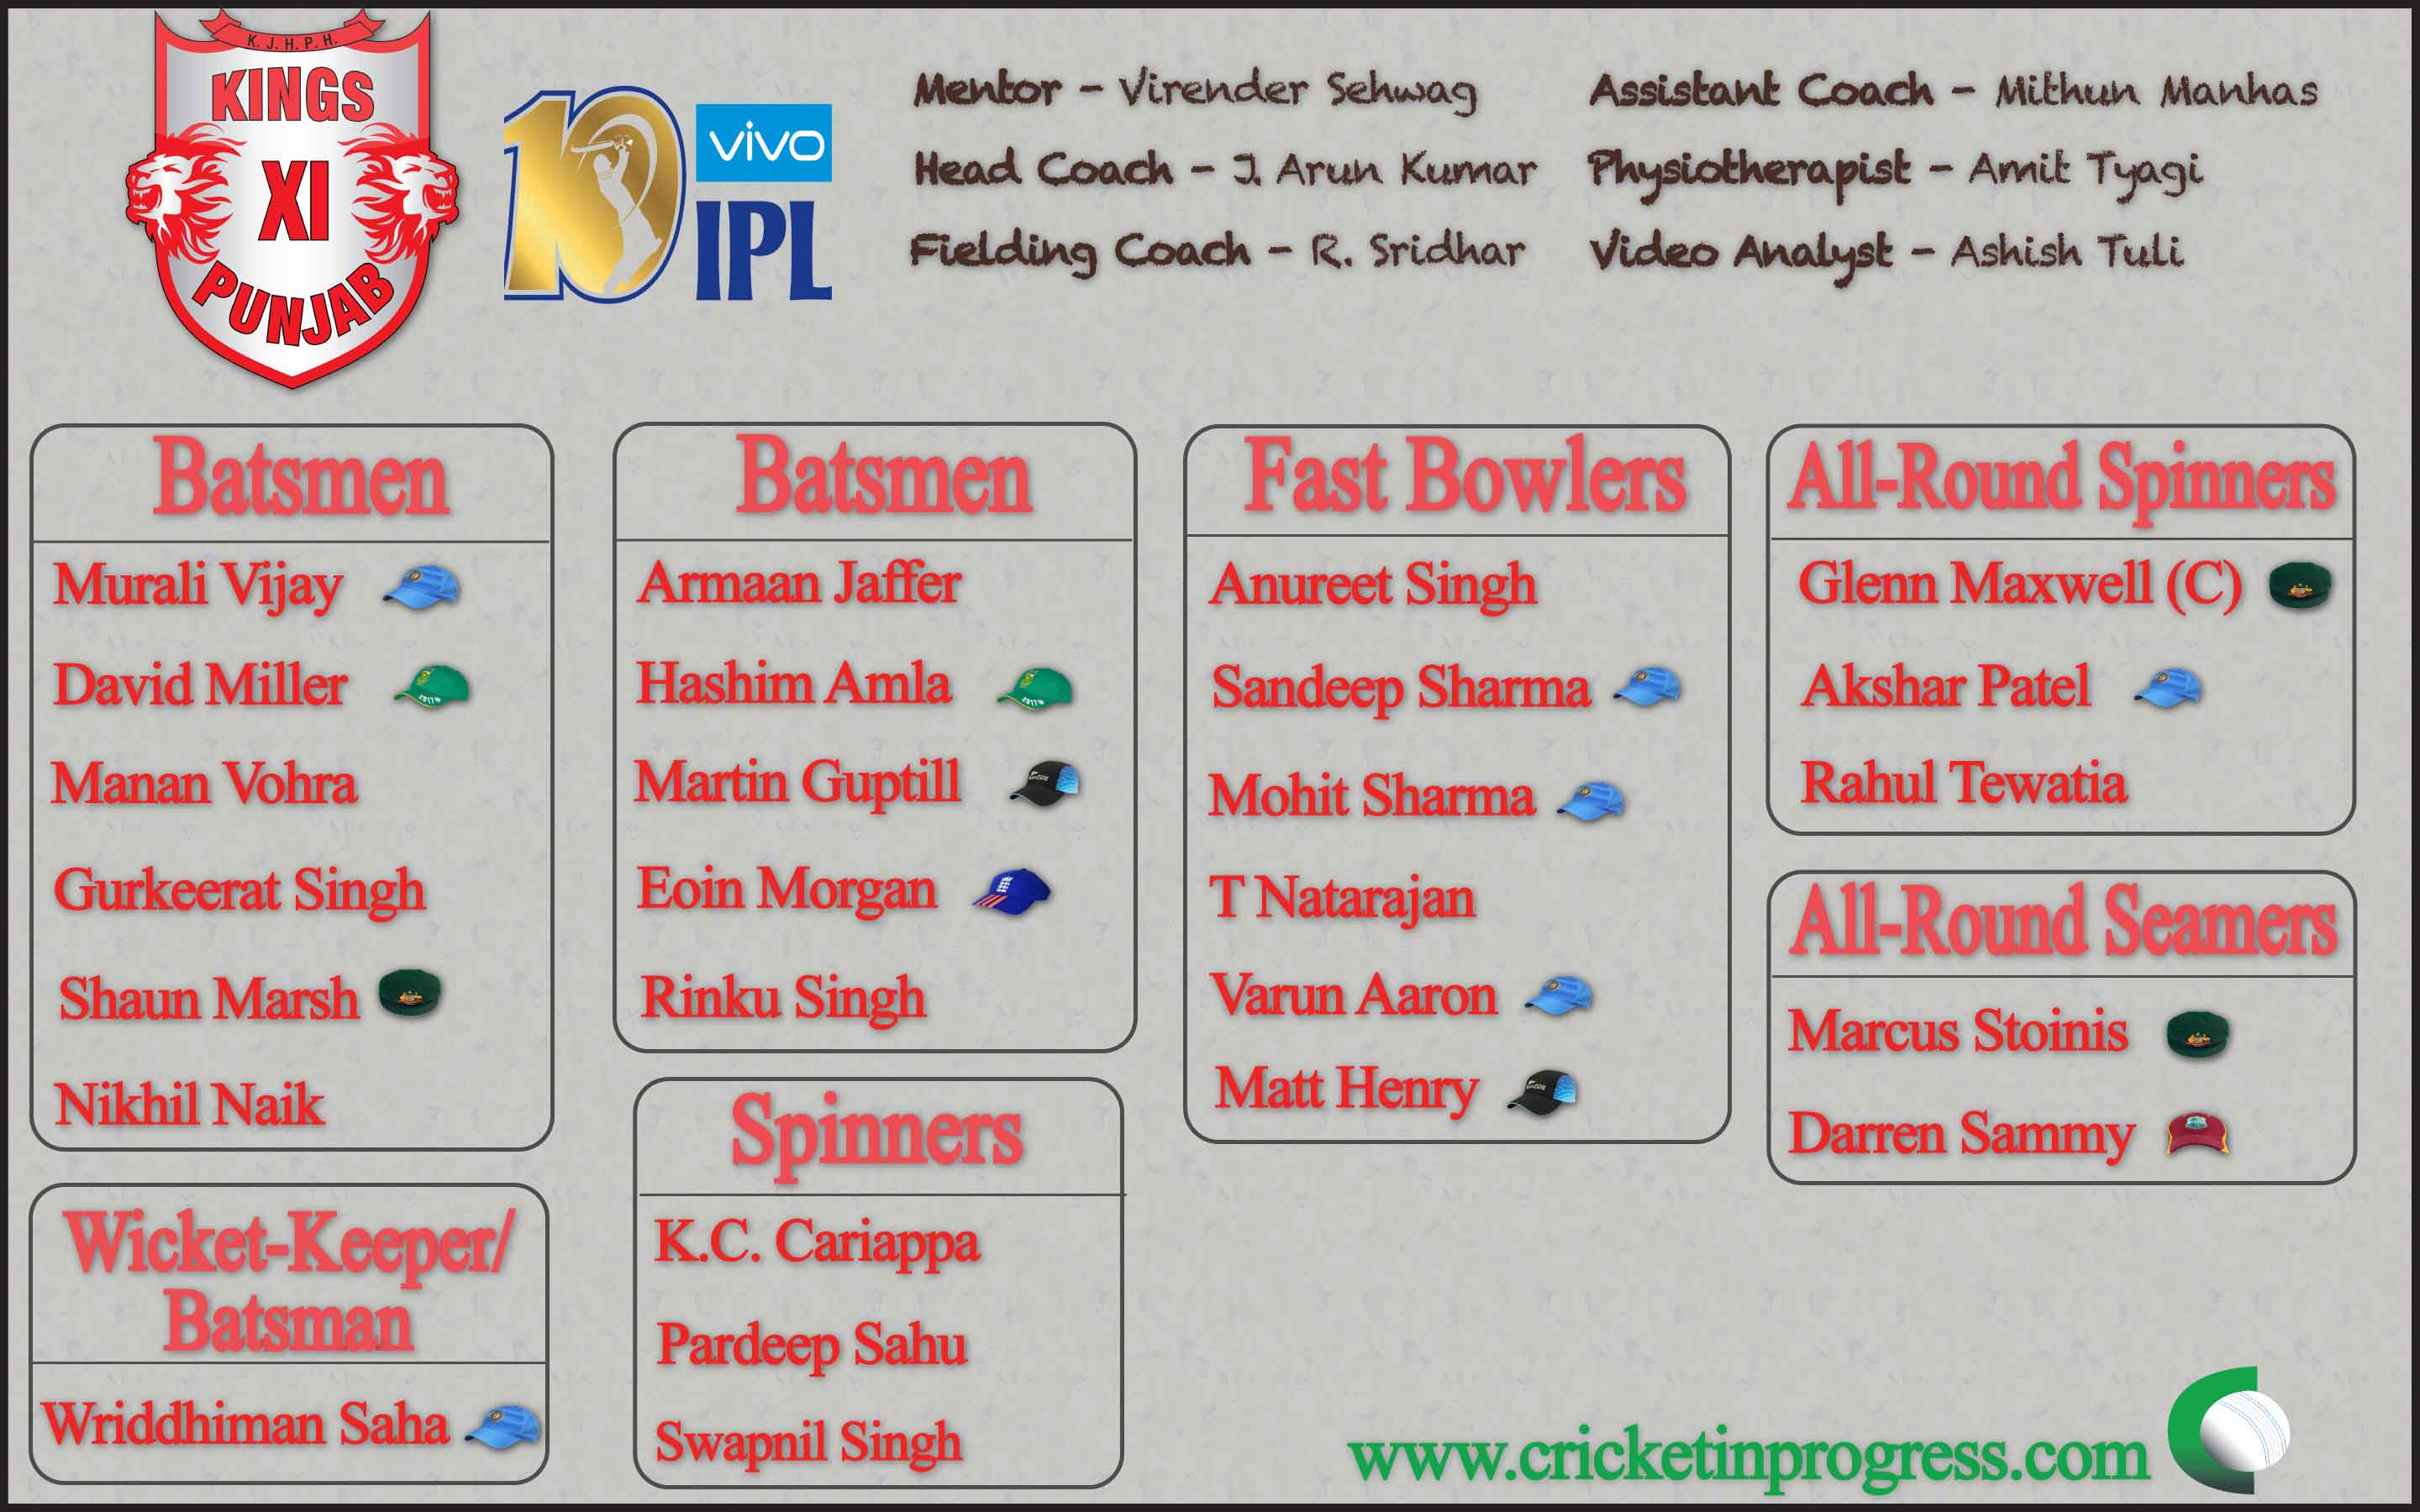 Kings XI Punjab Roster